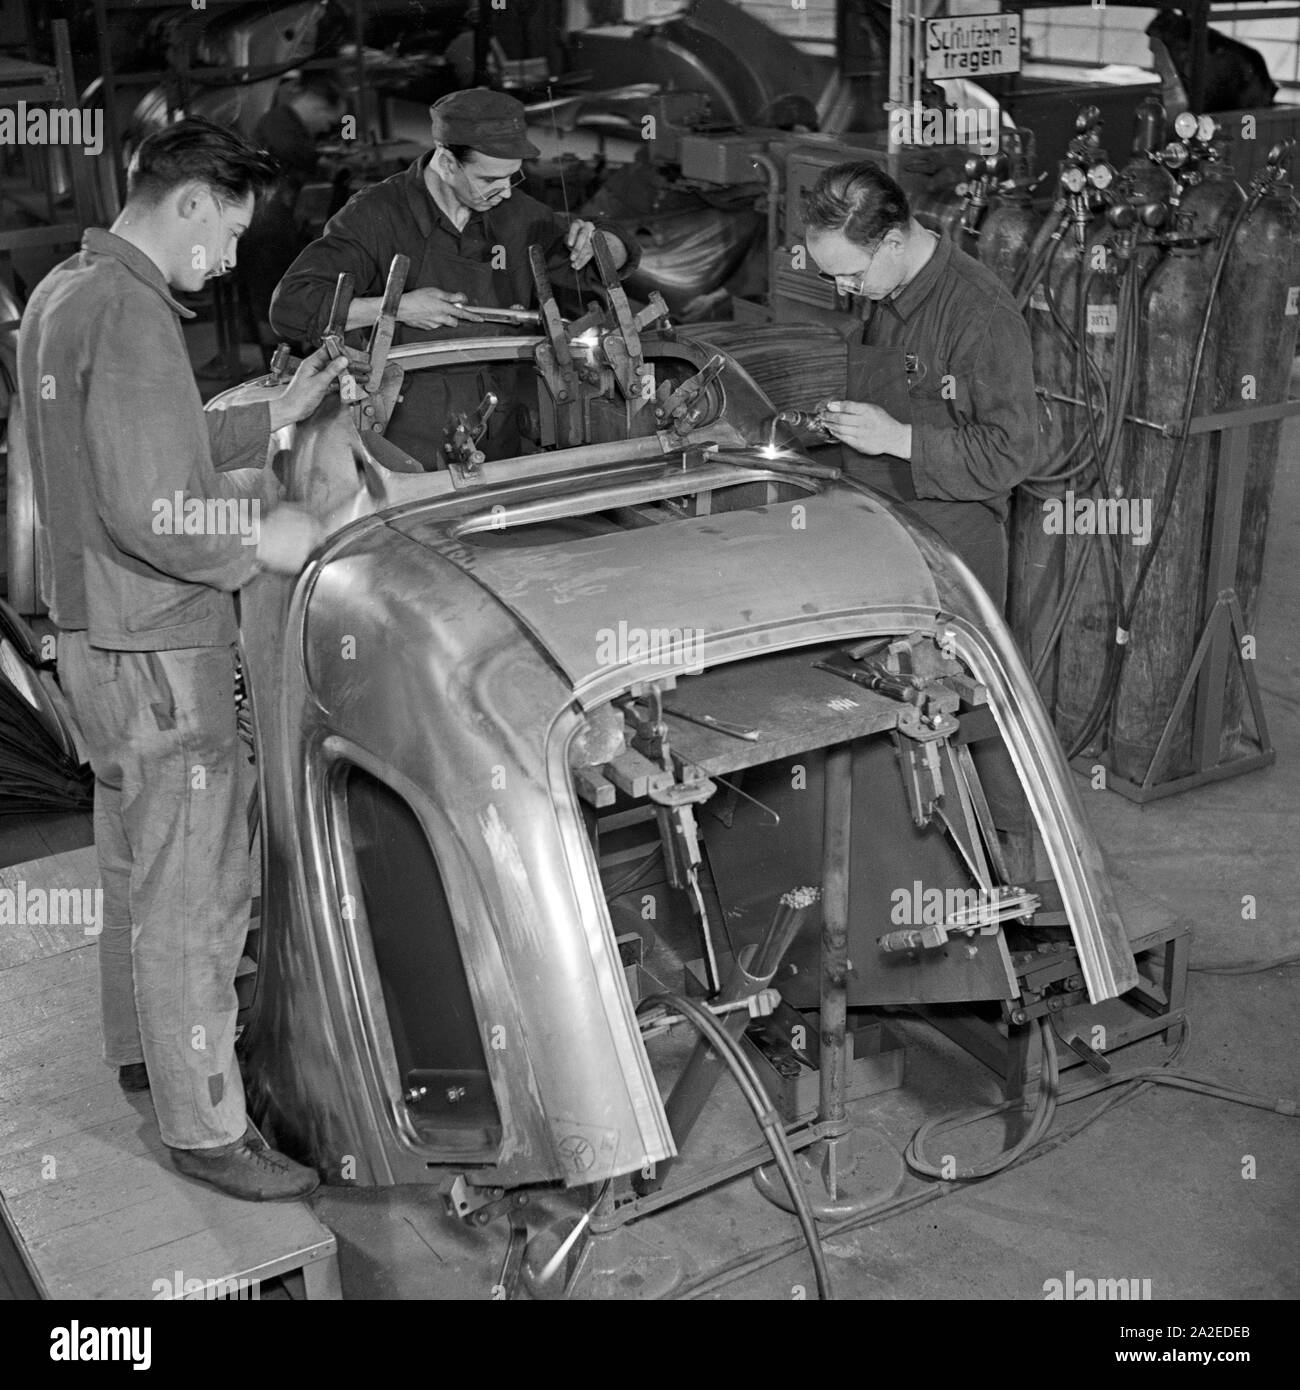 Arbeiter der Ford Werke in Köln Niehl bei der Reparatur an alten Karosserien, Deutschland 1930er Jahre. Workers repairing old chassis at the Ford factory at Cologne, Germany 1930s. Stock Photo